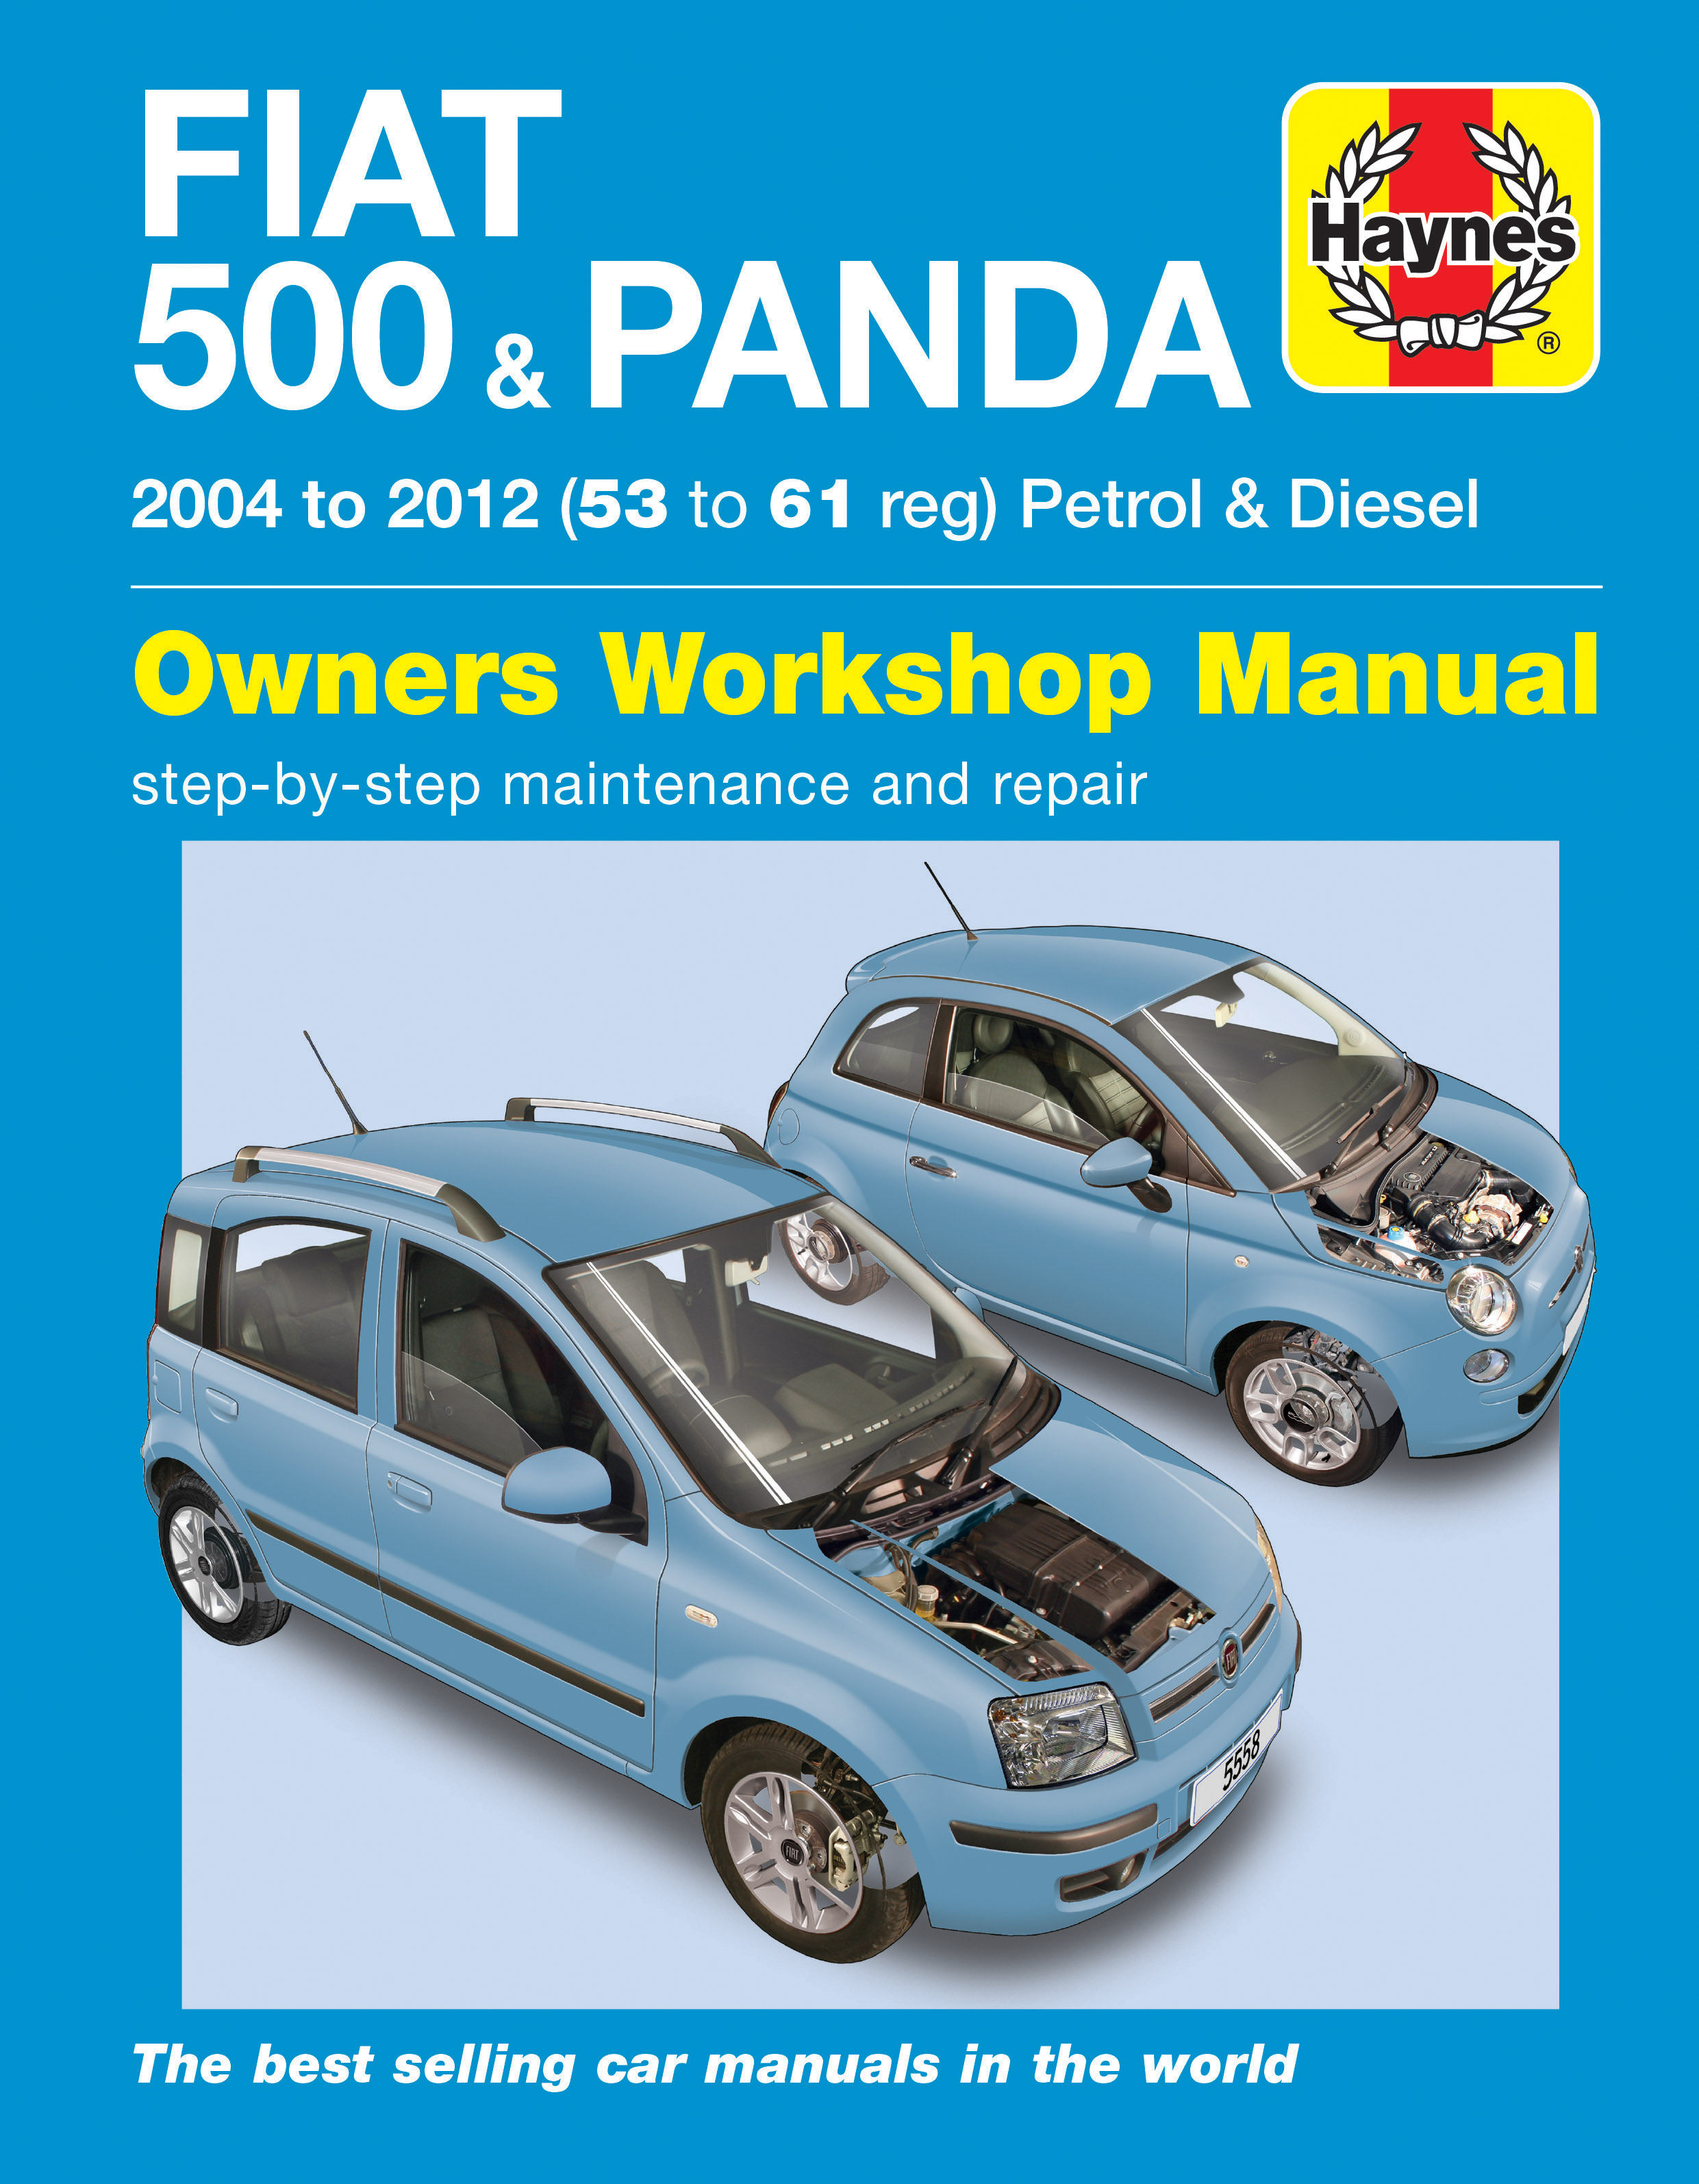 Repair Manuals & Guides For Fiat Panda 2004 - 2012 - Haynes Manuals